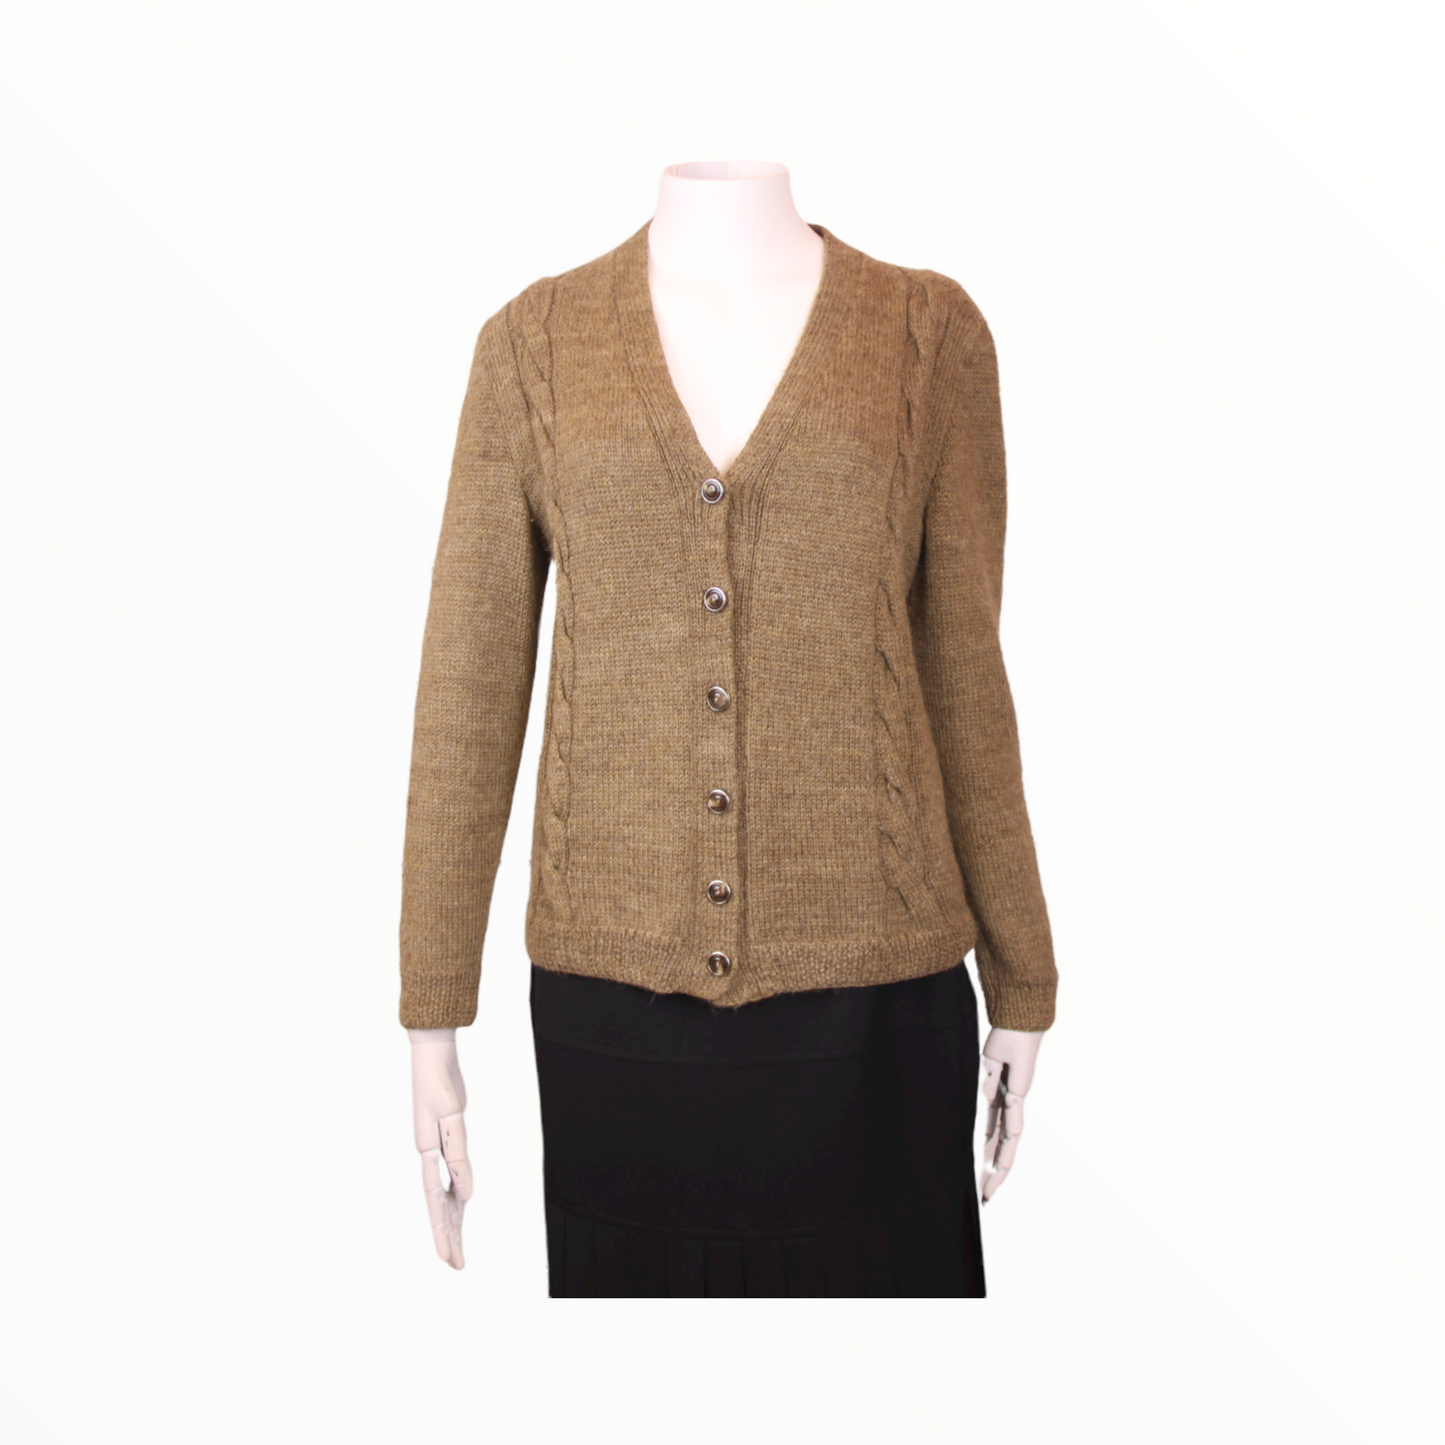 Vintage brown wool sweater - M - 1990s